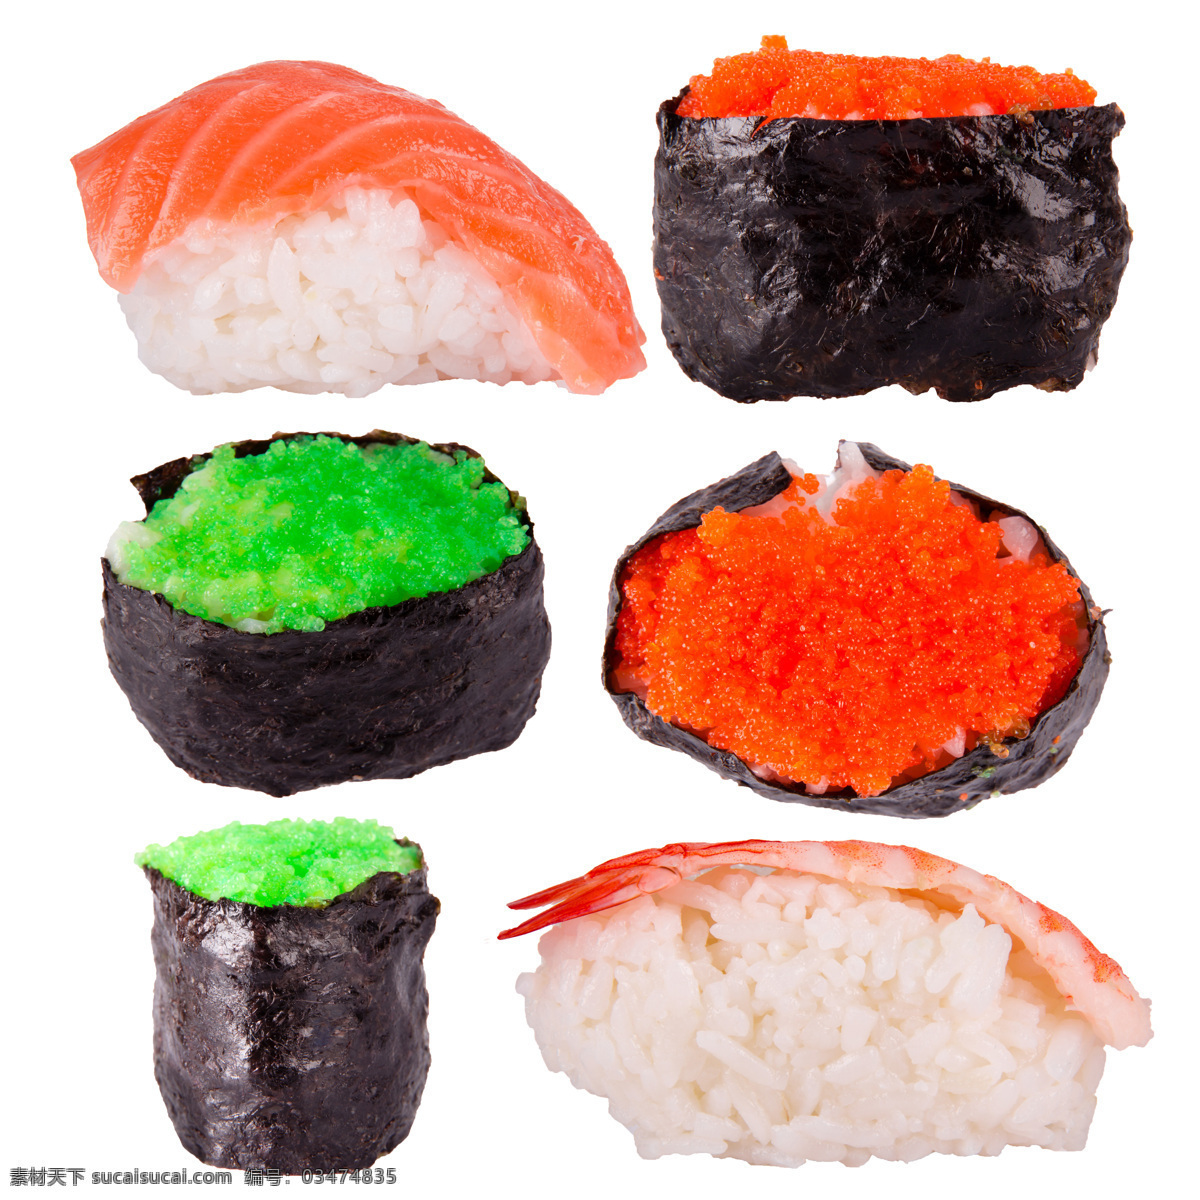 日本寿司摄影 食物 美食 寿司 紫菜卷 生鱼片 三文鱼片 外国美食 餐饮美食 白色